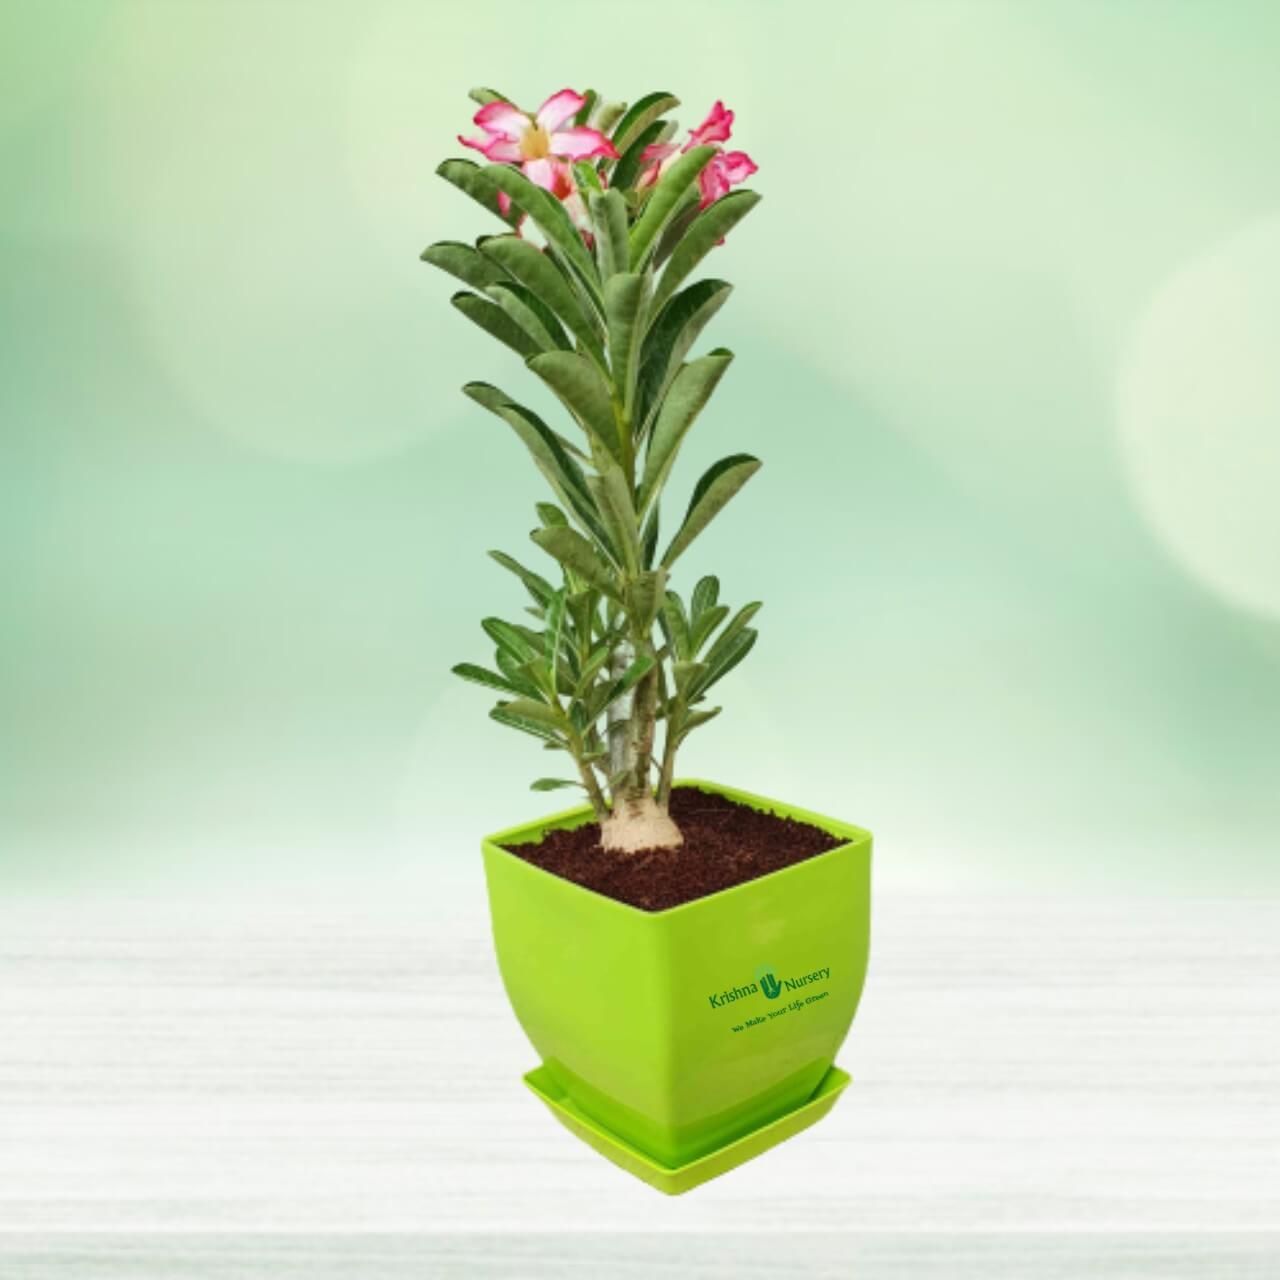 Adenium Plant Benefits In Hindi